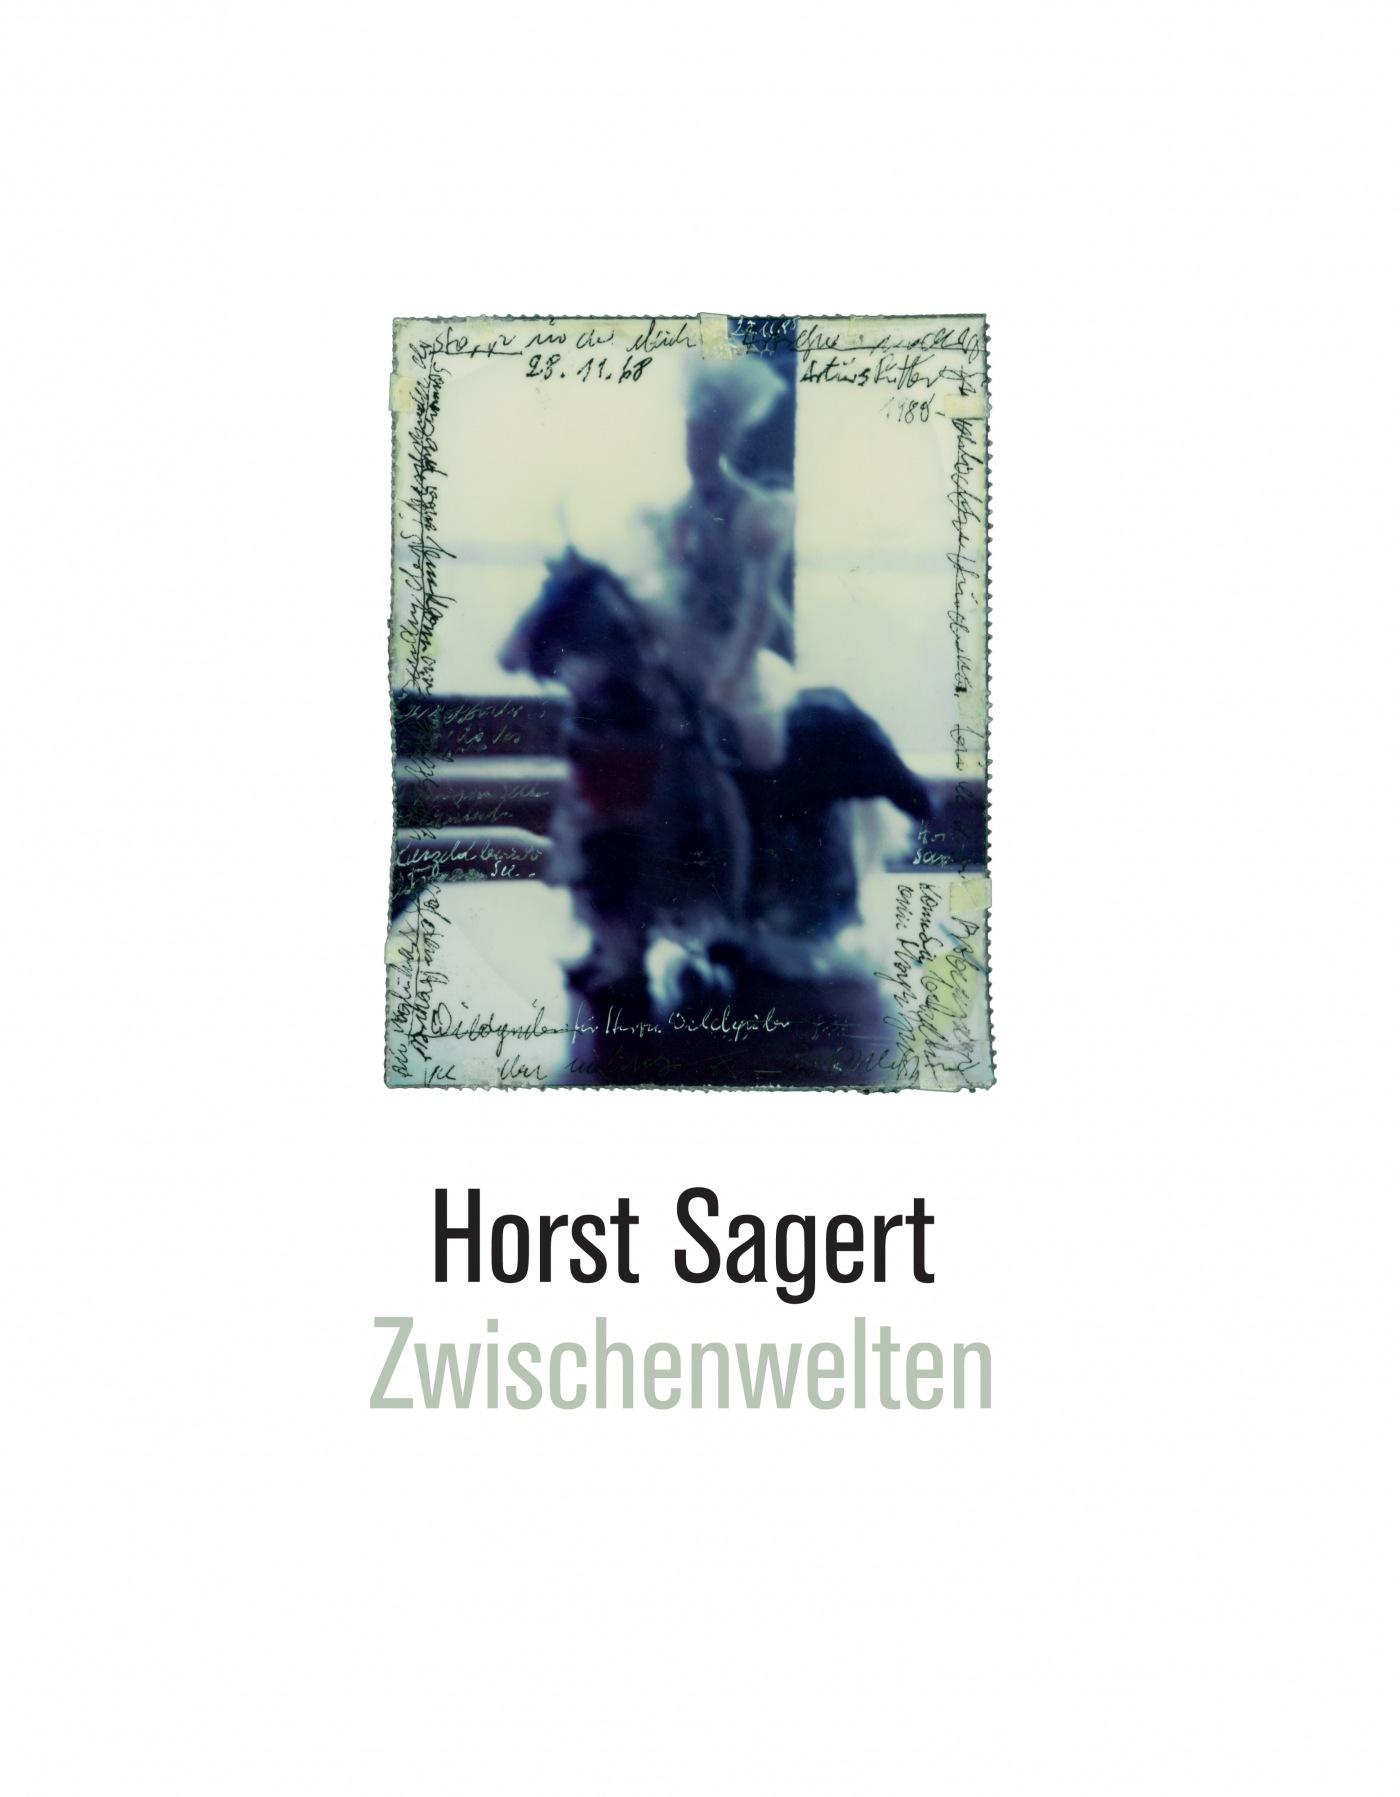 "Horst Sagert"